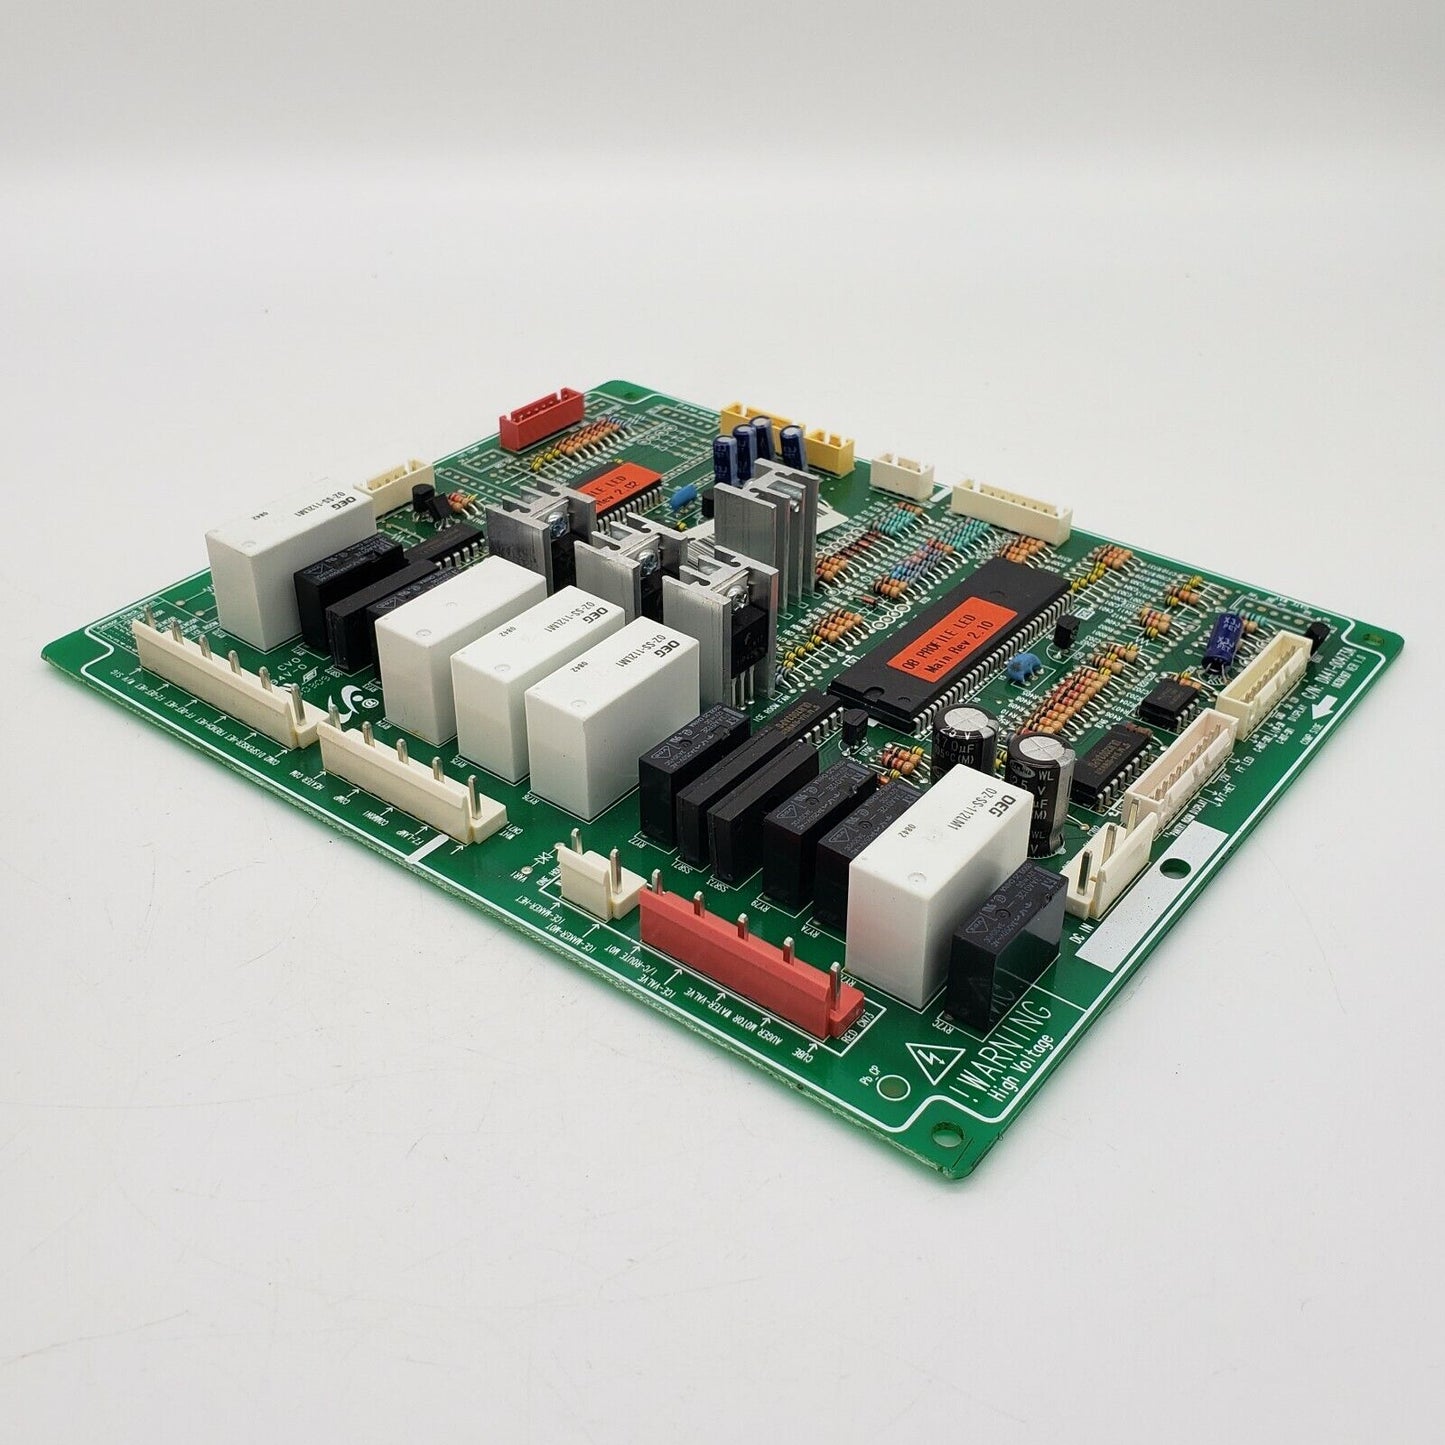 OEM Replacement for Samsung Refrigerator Control DA41-00476E